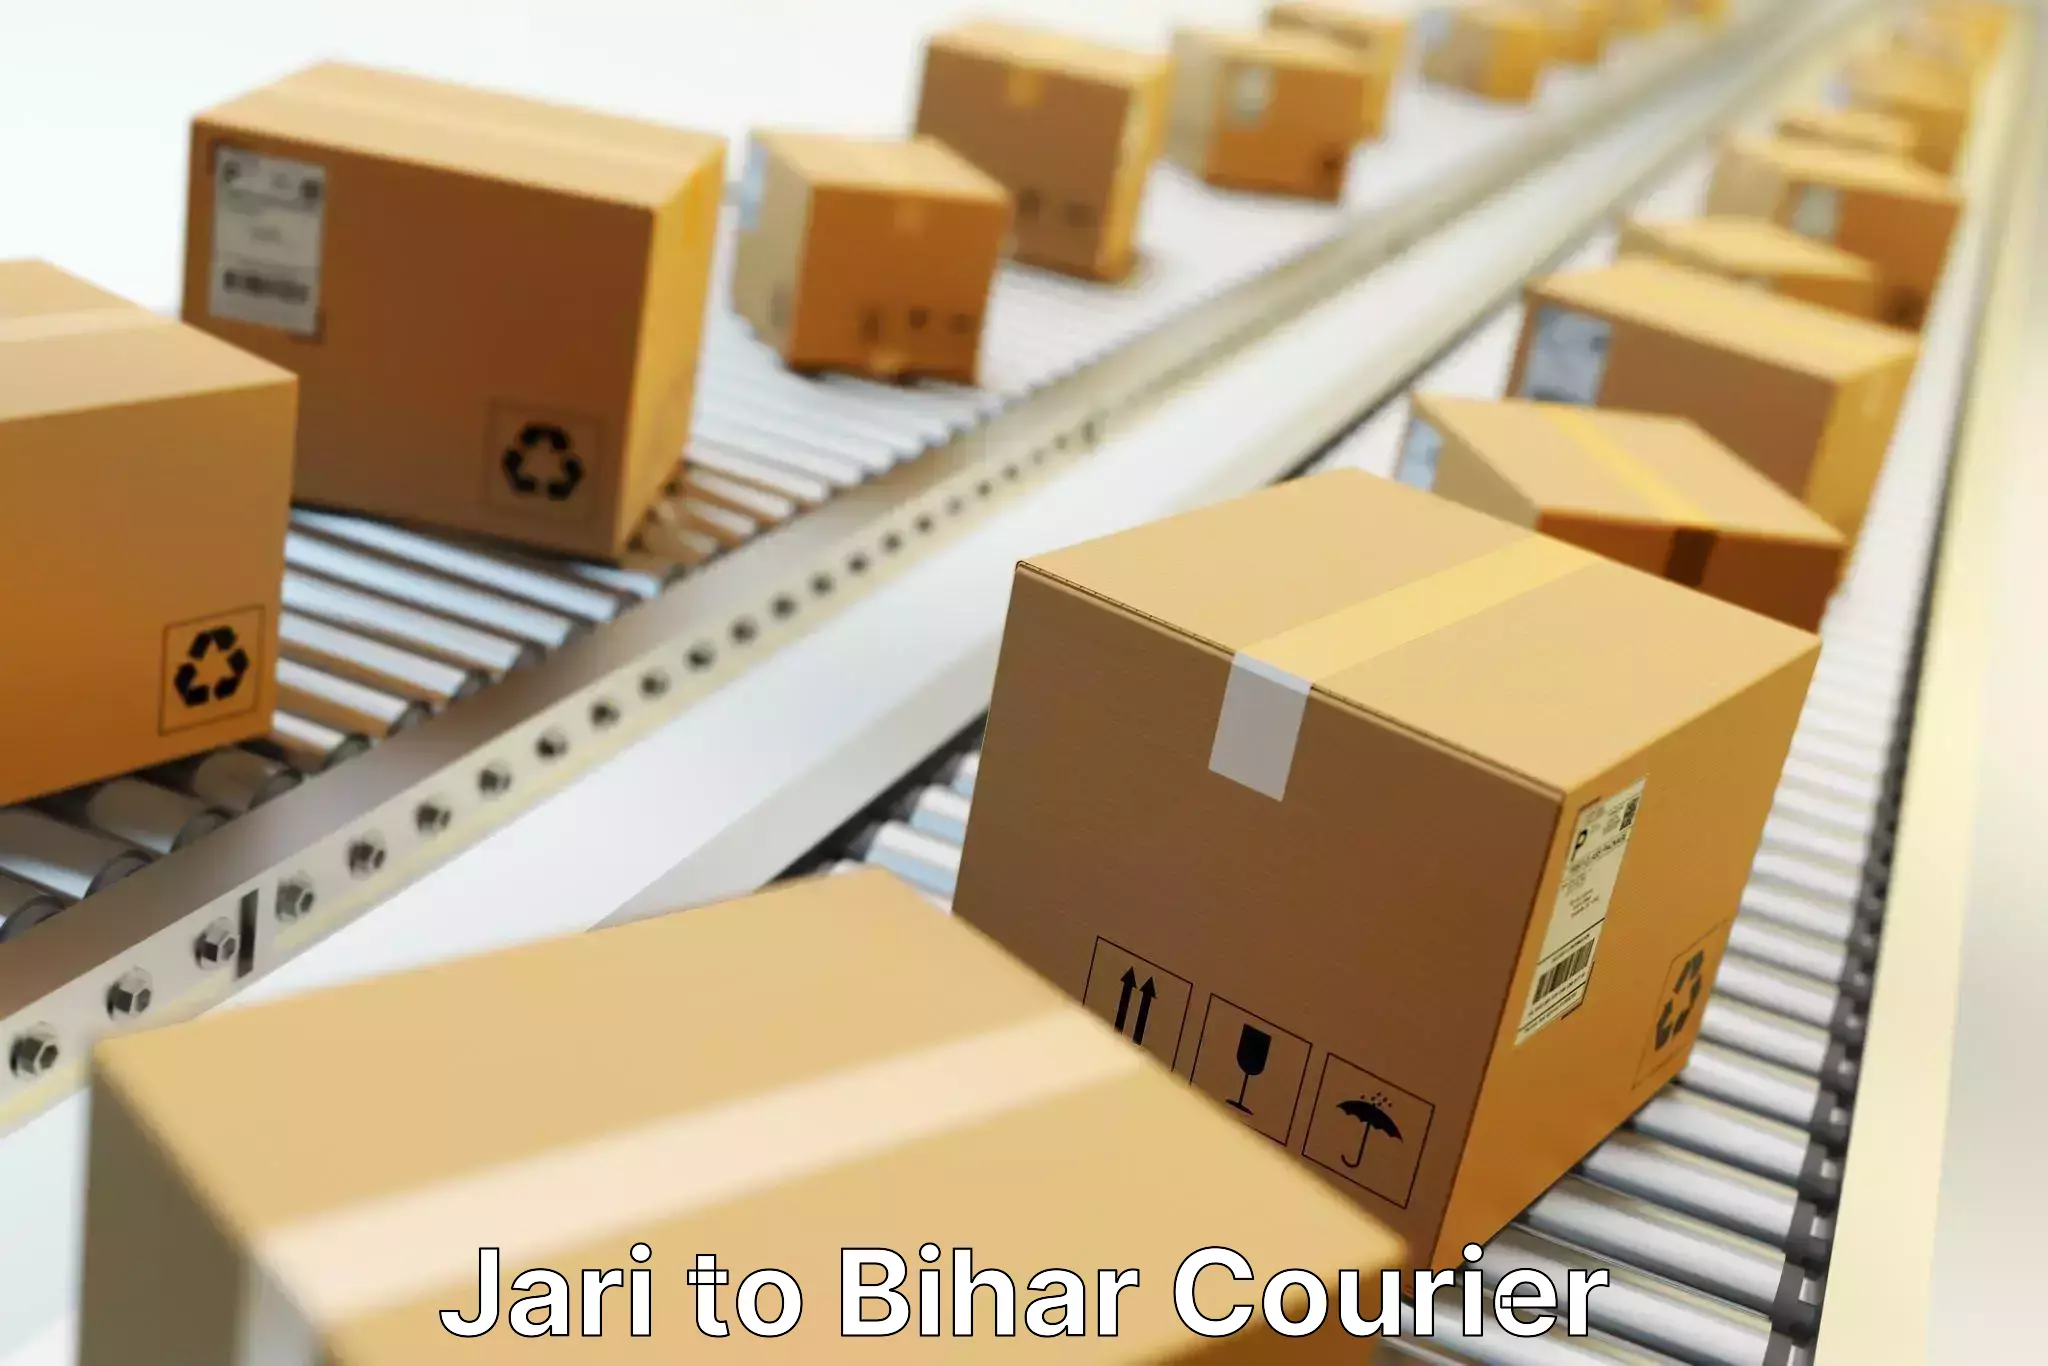 Express logistics service Jari to Bihar